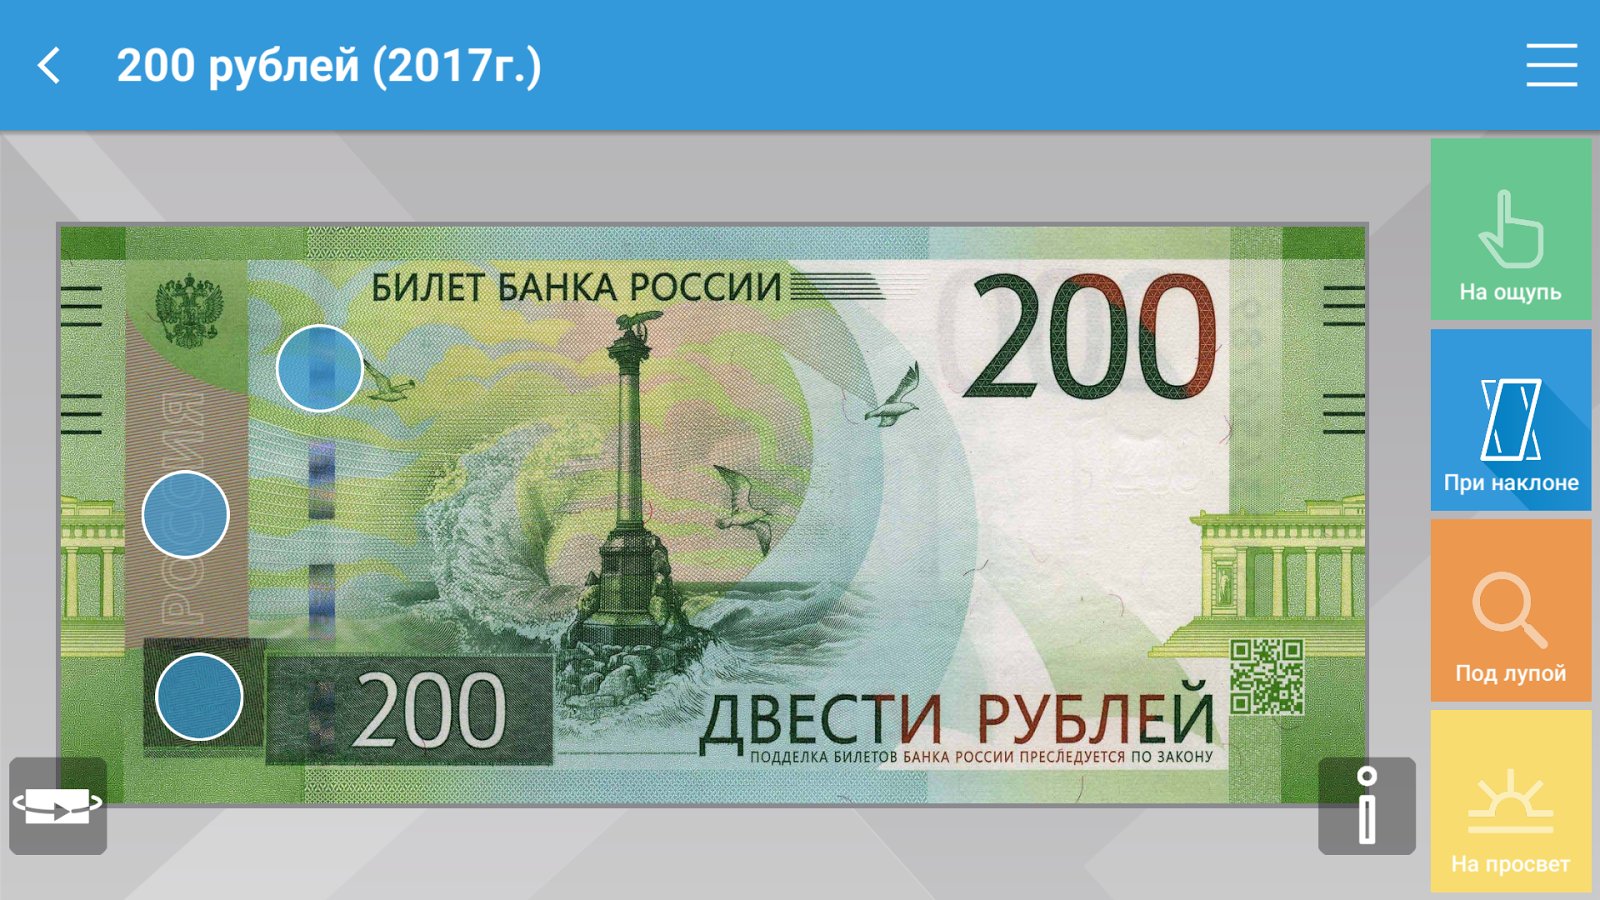 Номера 200 рублей. Купюра 200 рублей. 200 Рублей купюра 2017. Двести рублей 2017. 200 Рублей банкнота.